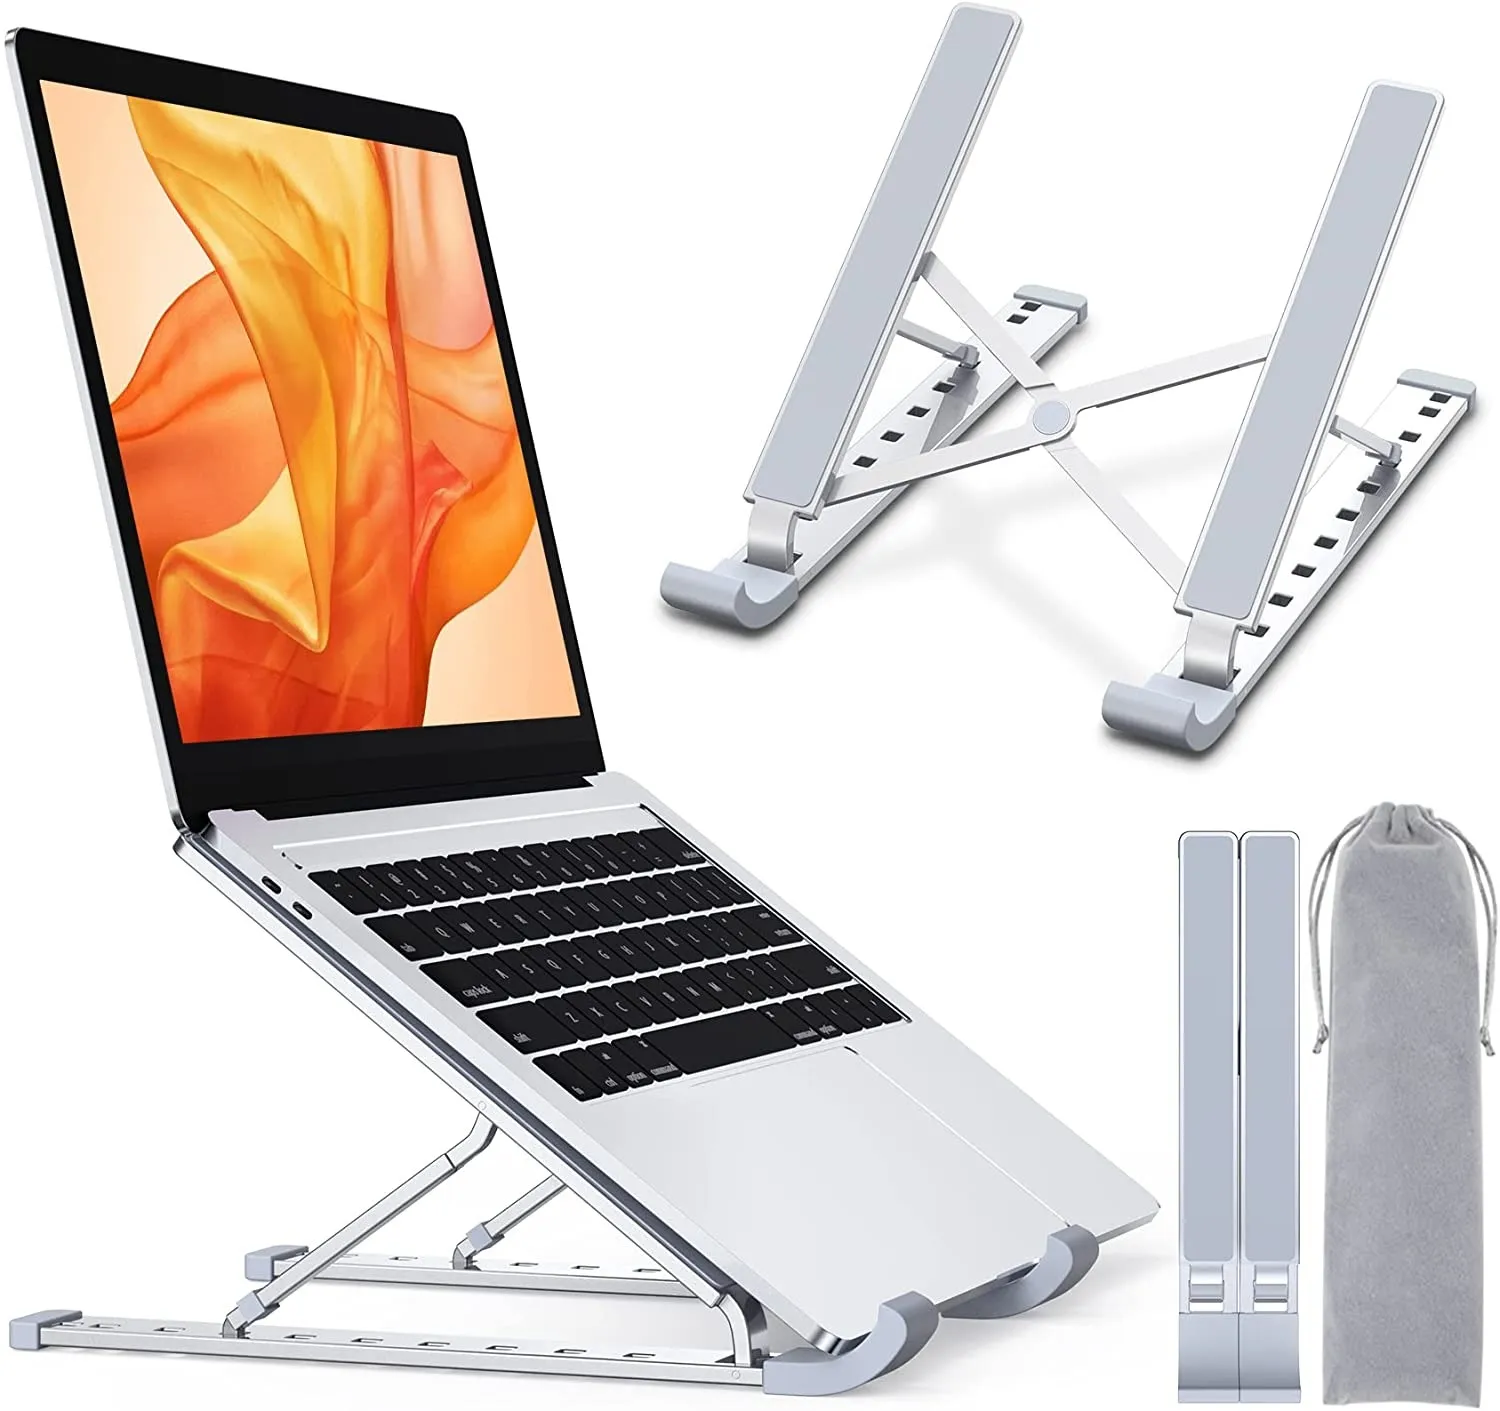 Support pour ordinateur portable, support de bureau pour ordinateur portable, support pour ordinateur portable réglable à 9 niveaux, support d'ordinateur ventilé en aluminium pour MacBook Pro Air, Lenovo